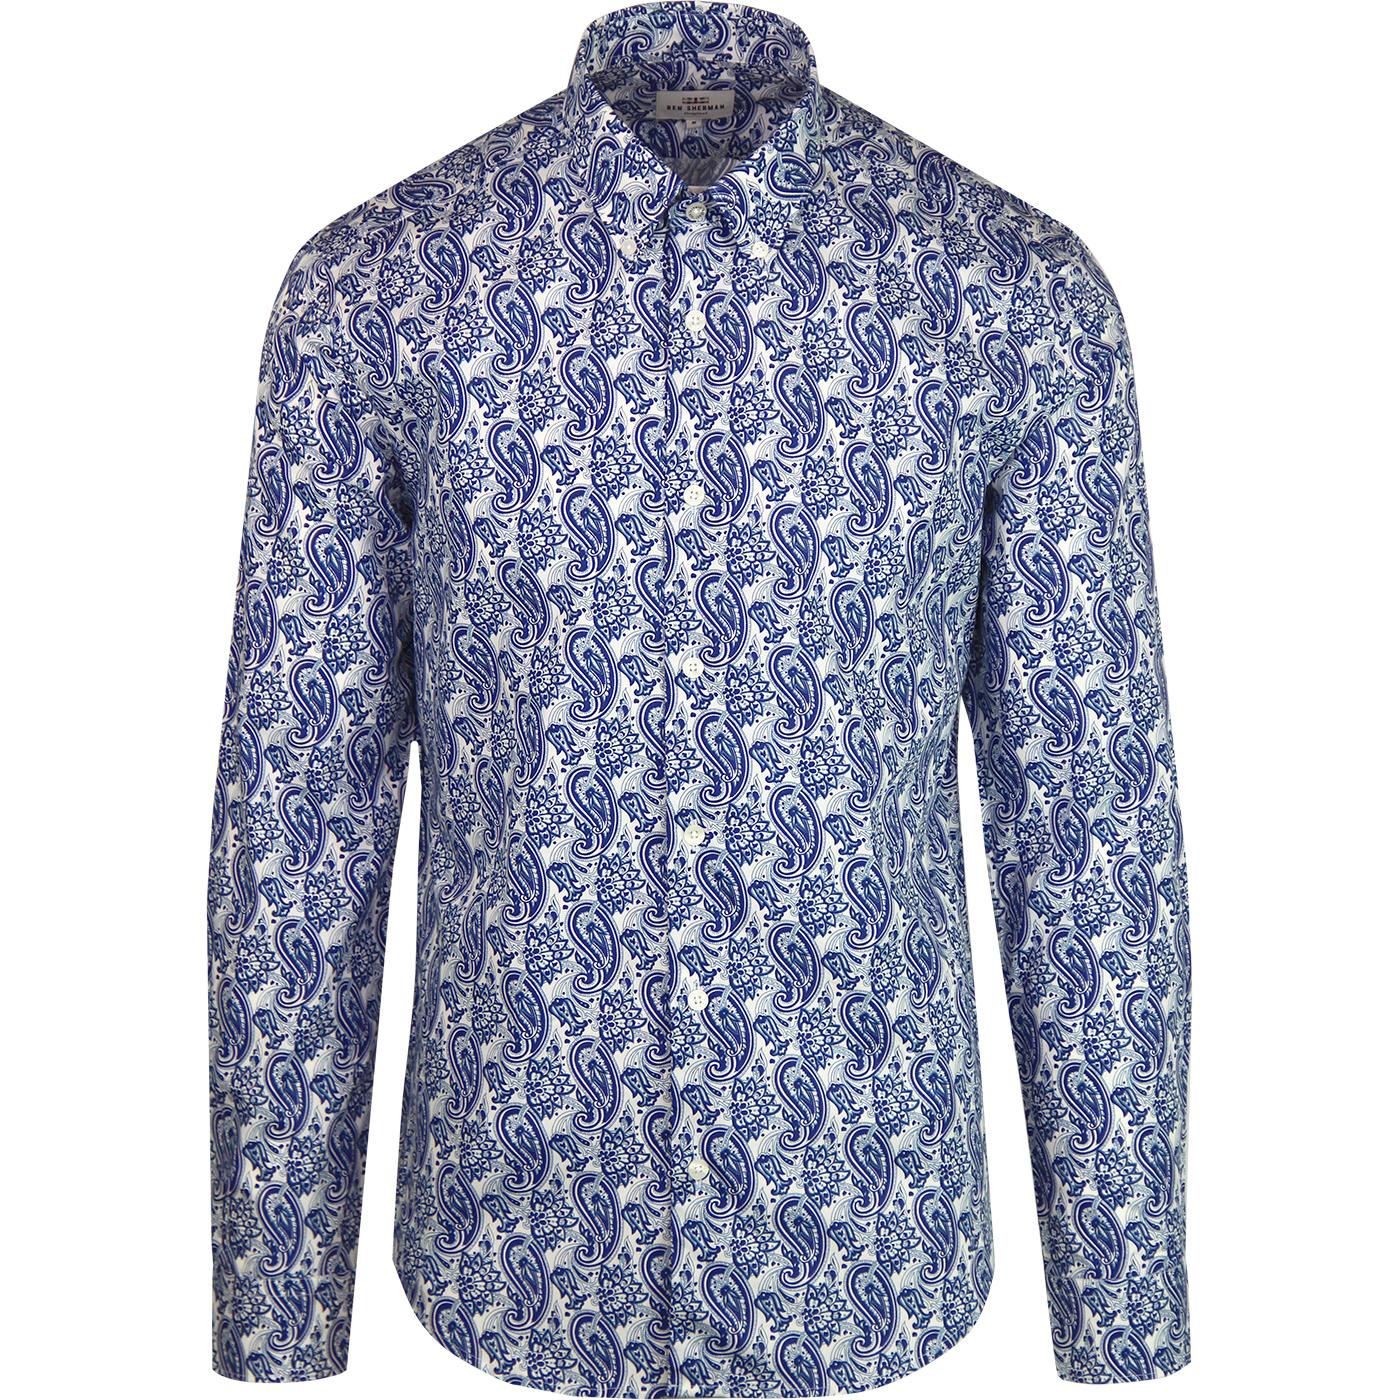 BEN SHERMAN 1960s Mod Linear Paisley Button Down Shirt